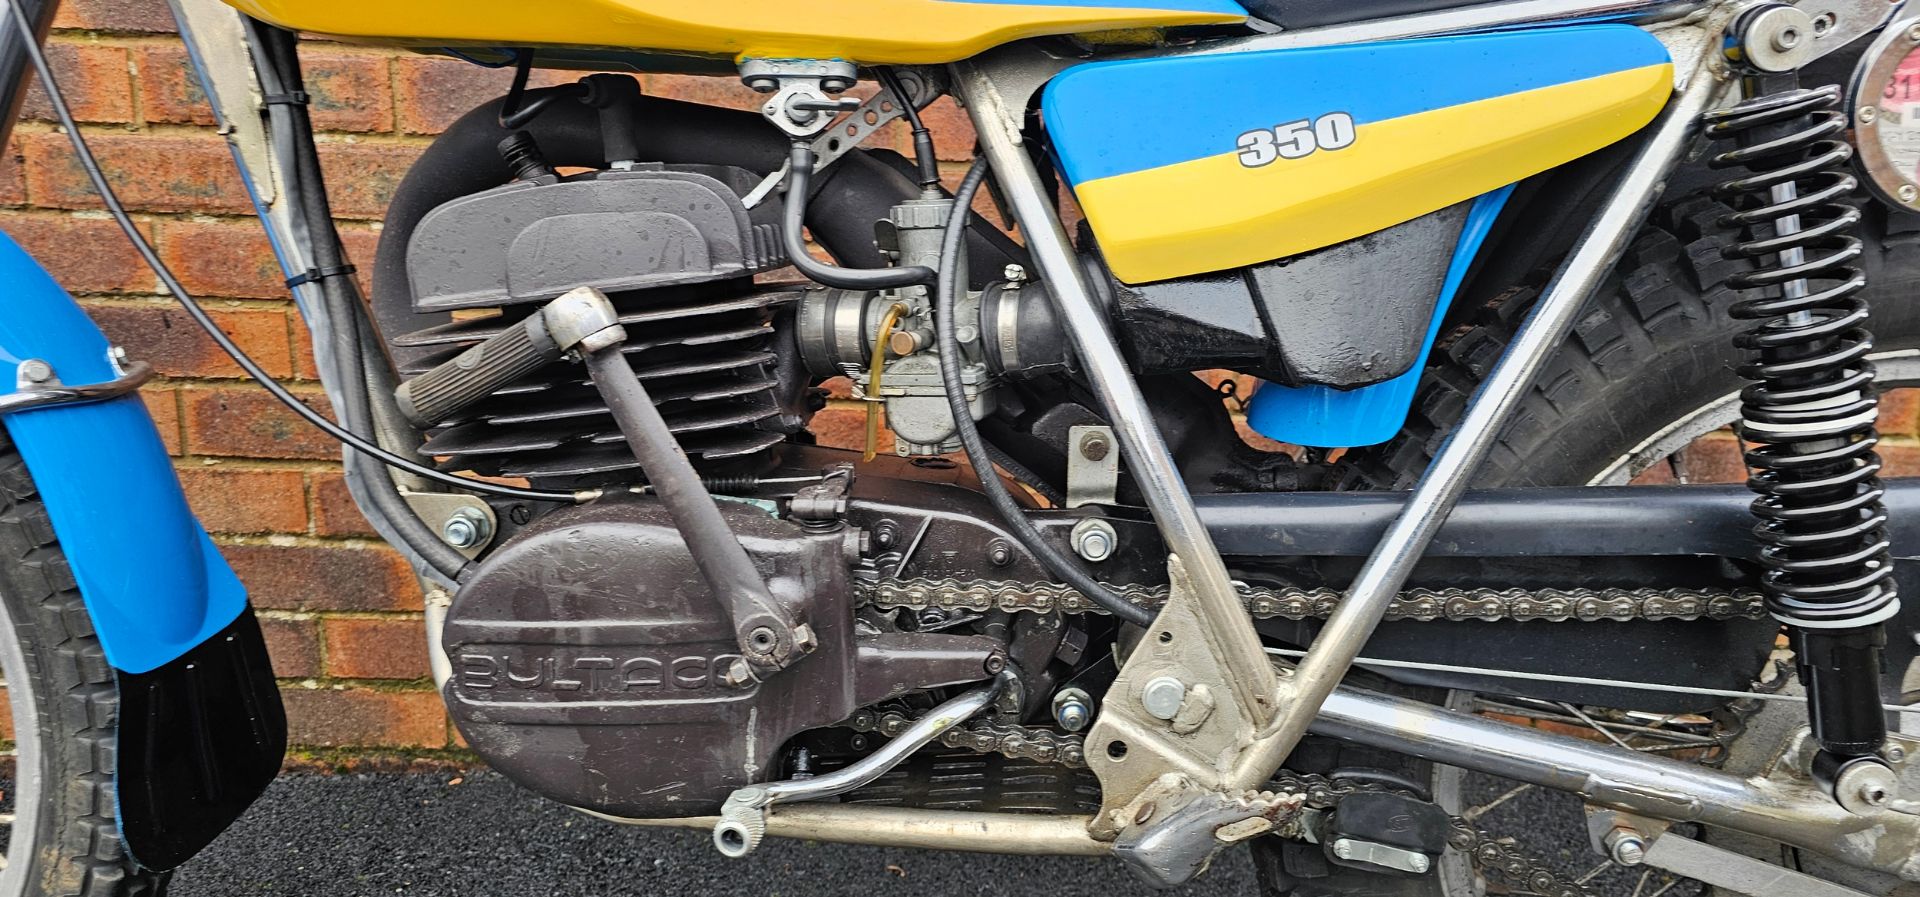 1978 Bultaco Sherpa T, 340cc. Registration number YGY 254S. Frame number JB 19900686. Engine - Image 9 of 13